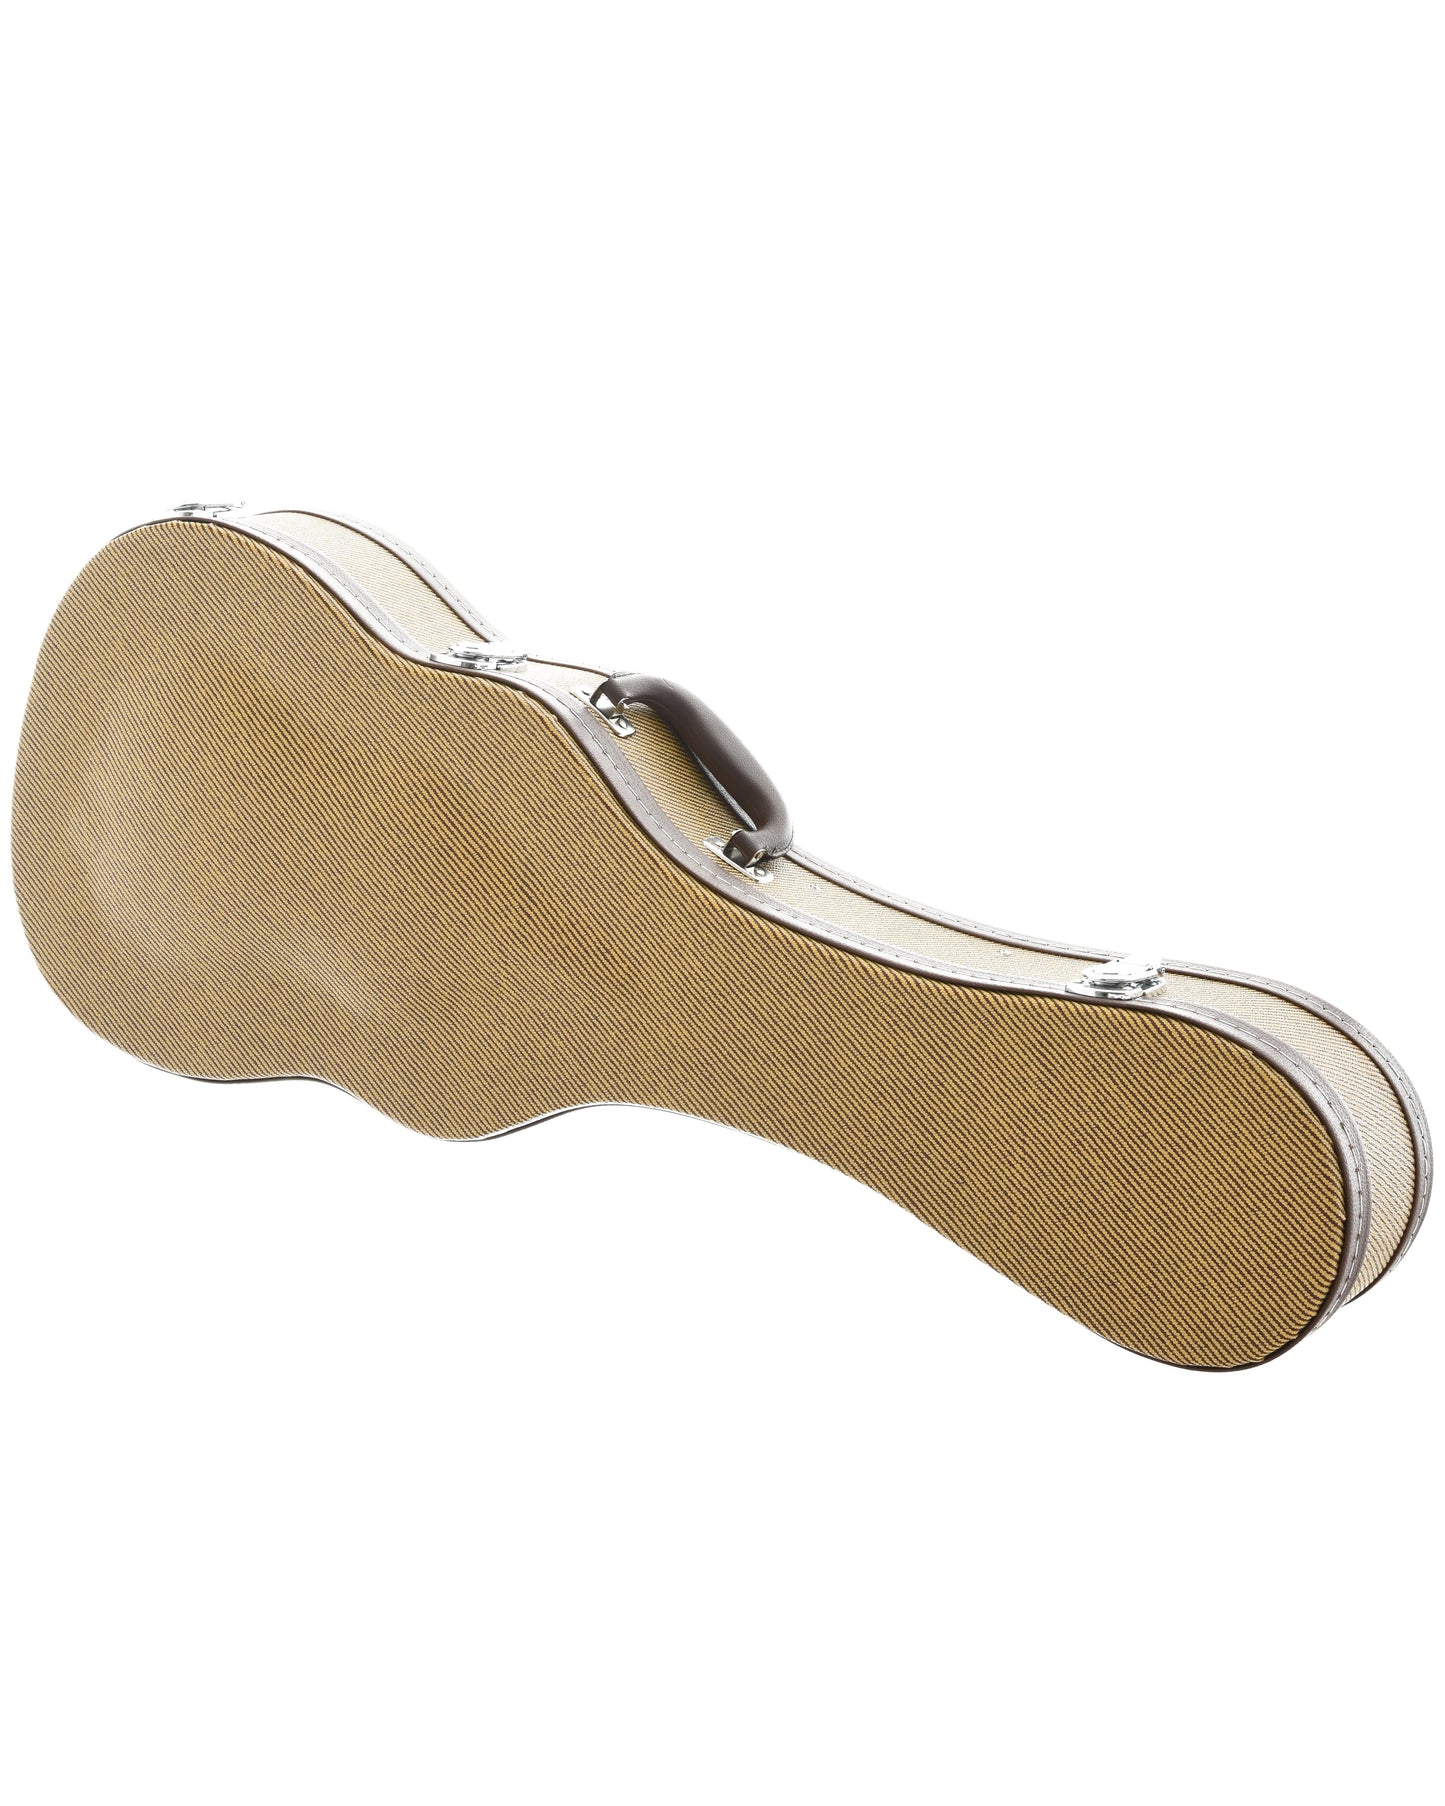 Image 1 of Ohana Tweed Baritone Ukulele Case - SKU# TWDHS-B : Product Type Accessories & Parts : Elderly Instruments